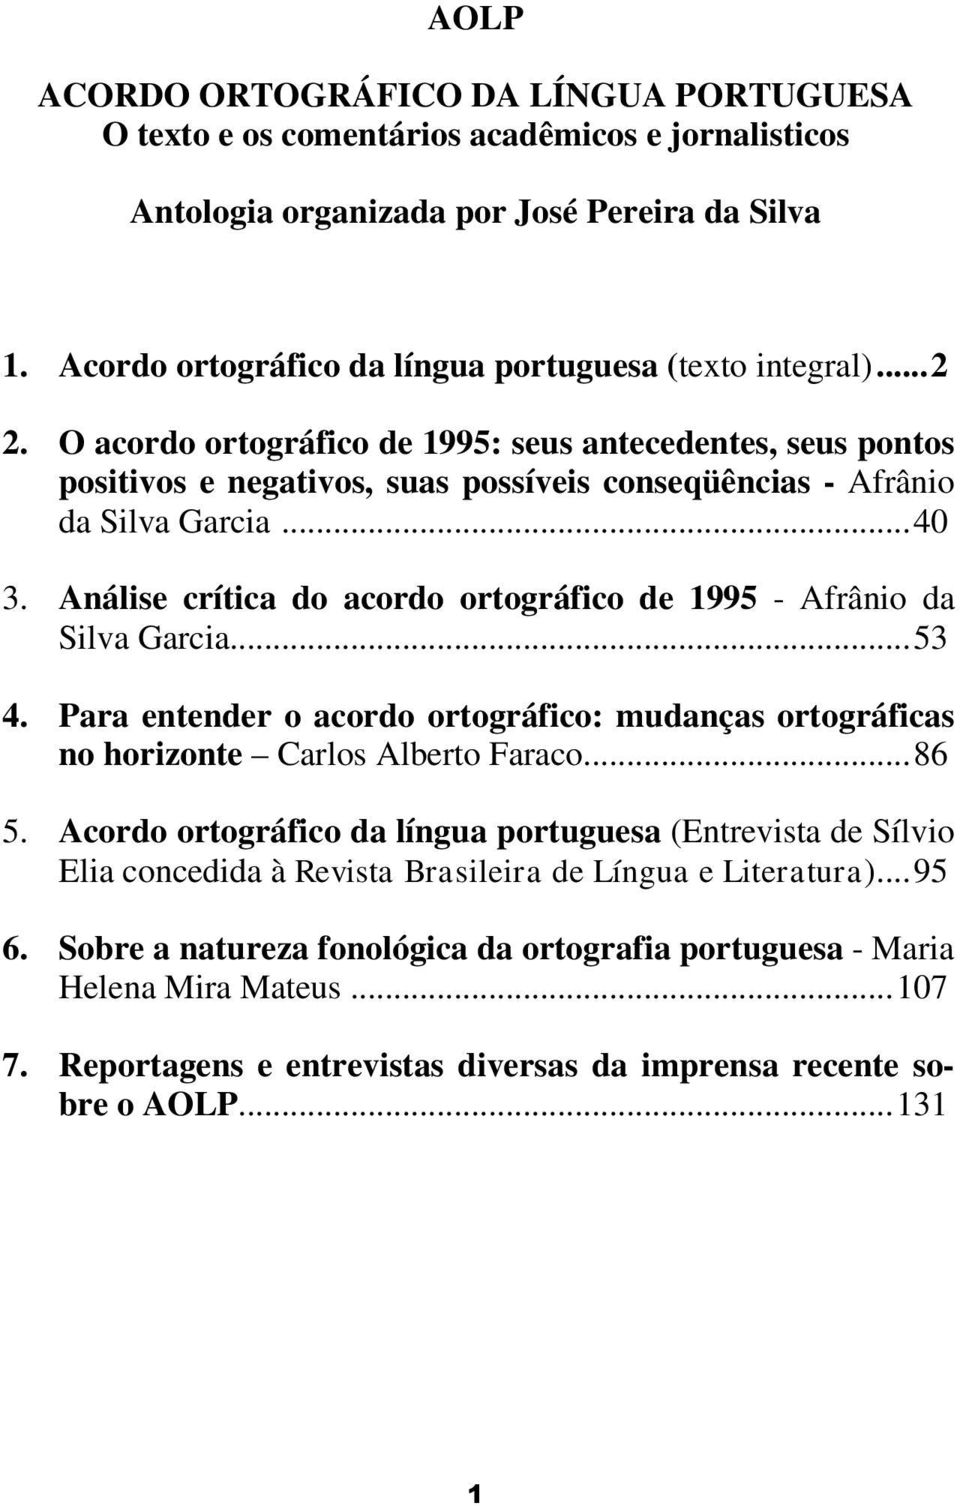 O acordo ortográfico de 1995: seus antecedentes, seus pontos positivos e negativos, suas possíveis conseqüências - Afrânio da Silva Garcia...40 3.